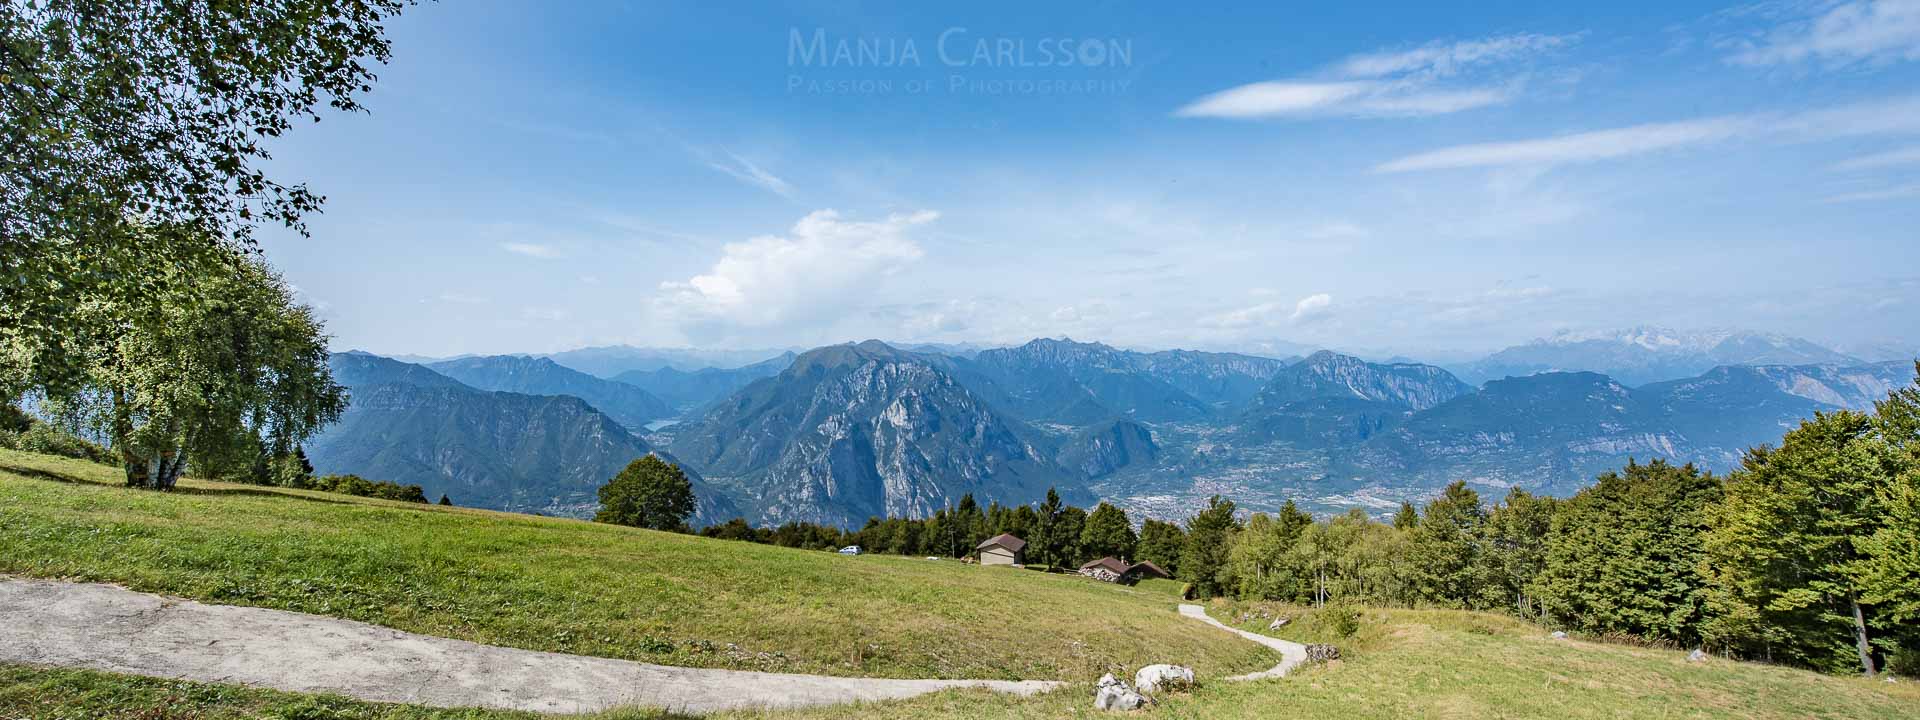 Blick ins Gardasee-Tal vom Monte Baldo